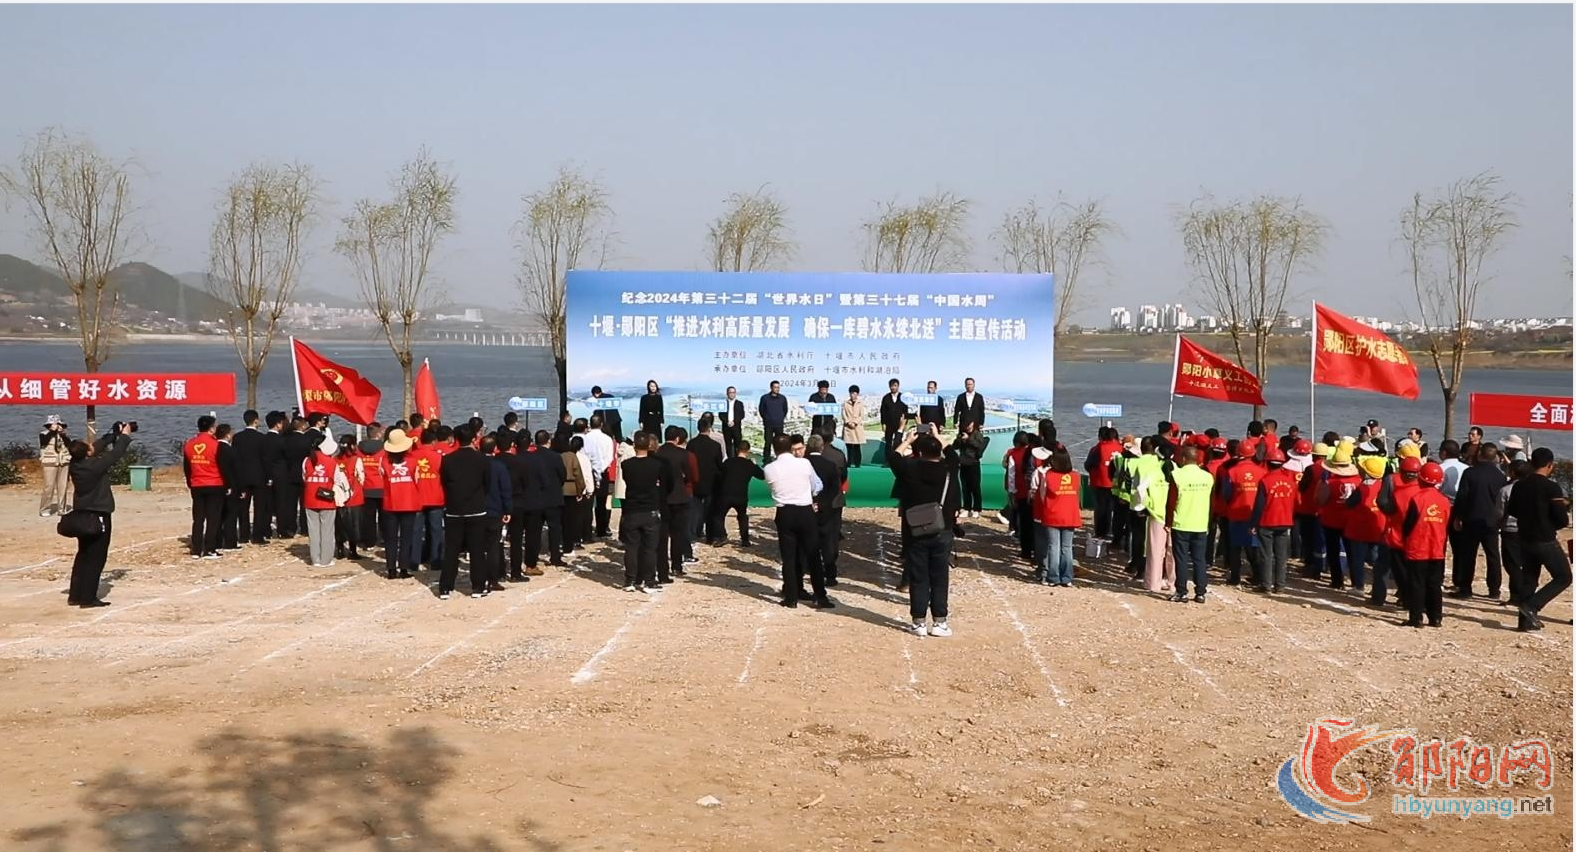 第三十二届“世界水日”暨第三十七届“中国水周”宣传活动在郧阳区启动